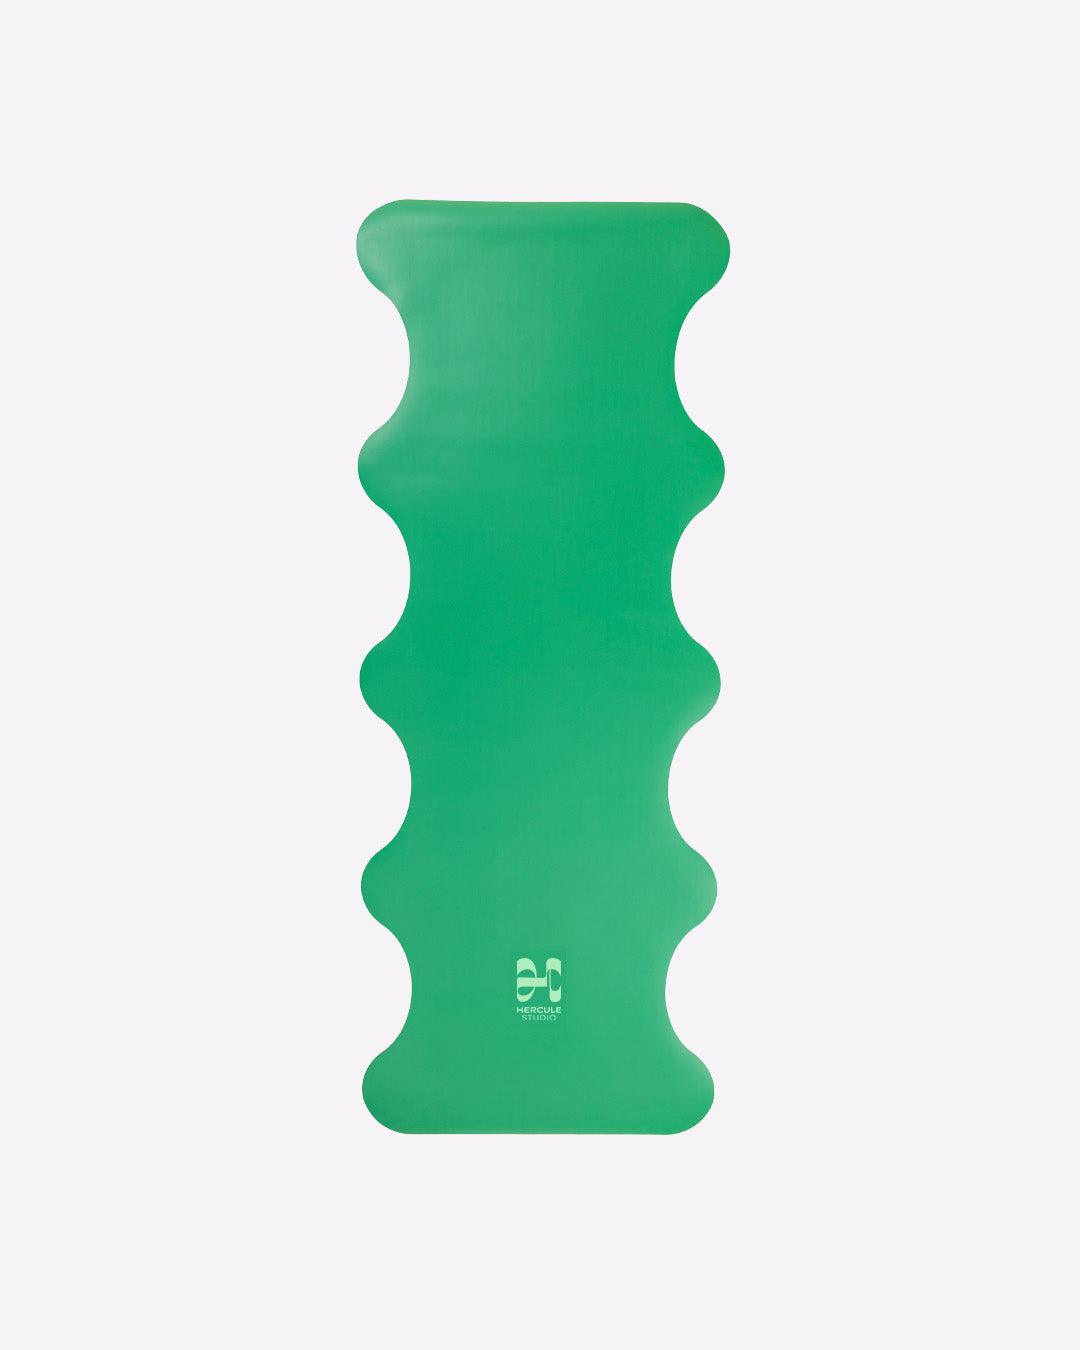 Tapis de sol pour le yoga de la marque hercule studio modèle mar couleur golf green packshot déplié